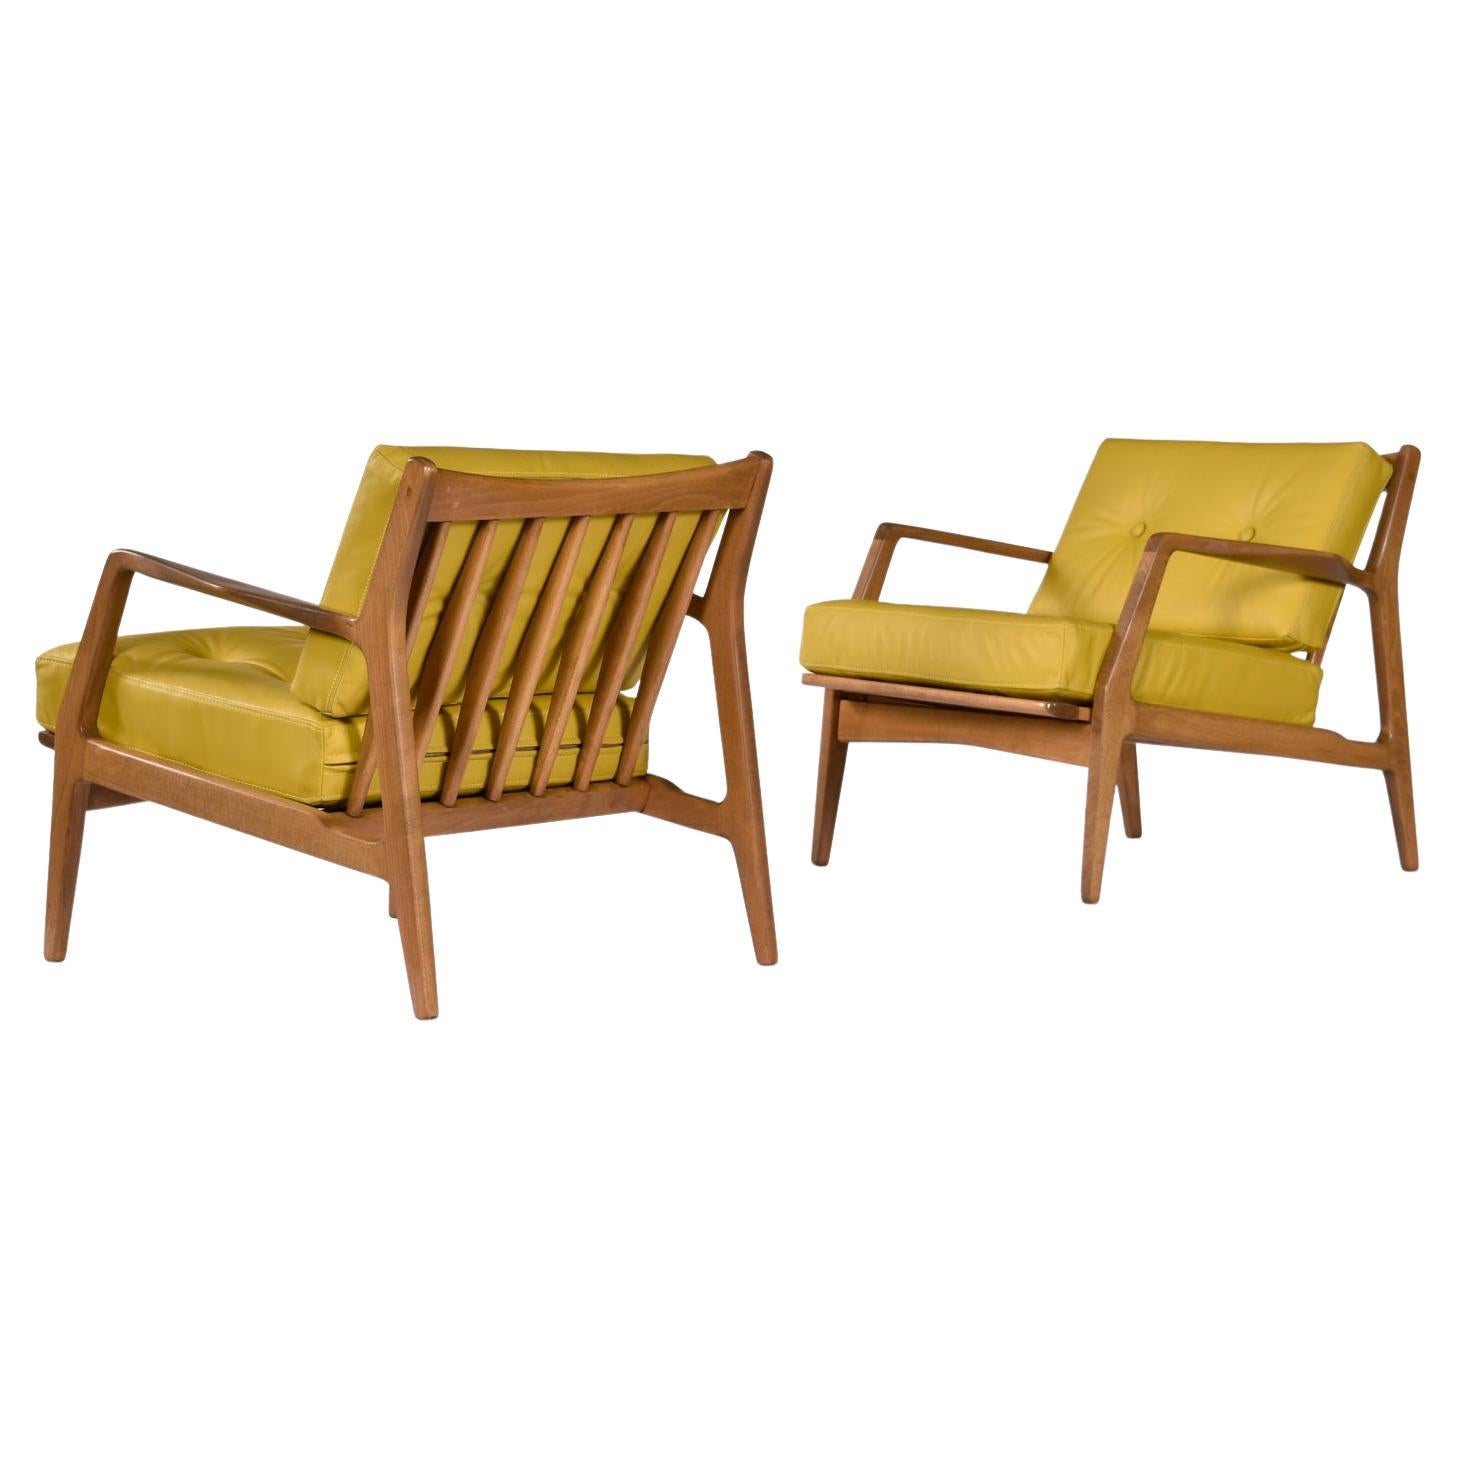 Ein Paar Mid-Century Modern Number 596 Lounge Chairs, entworfen von Lawrence Peabody für Selig. Professionell neu gepolstert in vollnarbigem flachsgelbem Leder. Dieser zeitlose Loungesessel ist der Inbegriff des Mid-Century Modern-Stils, der